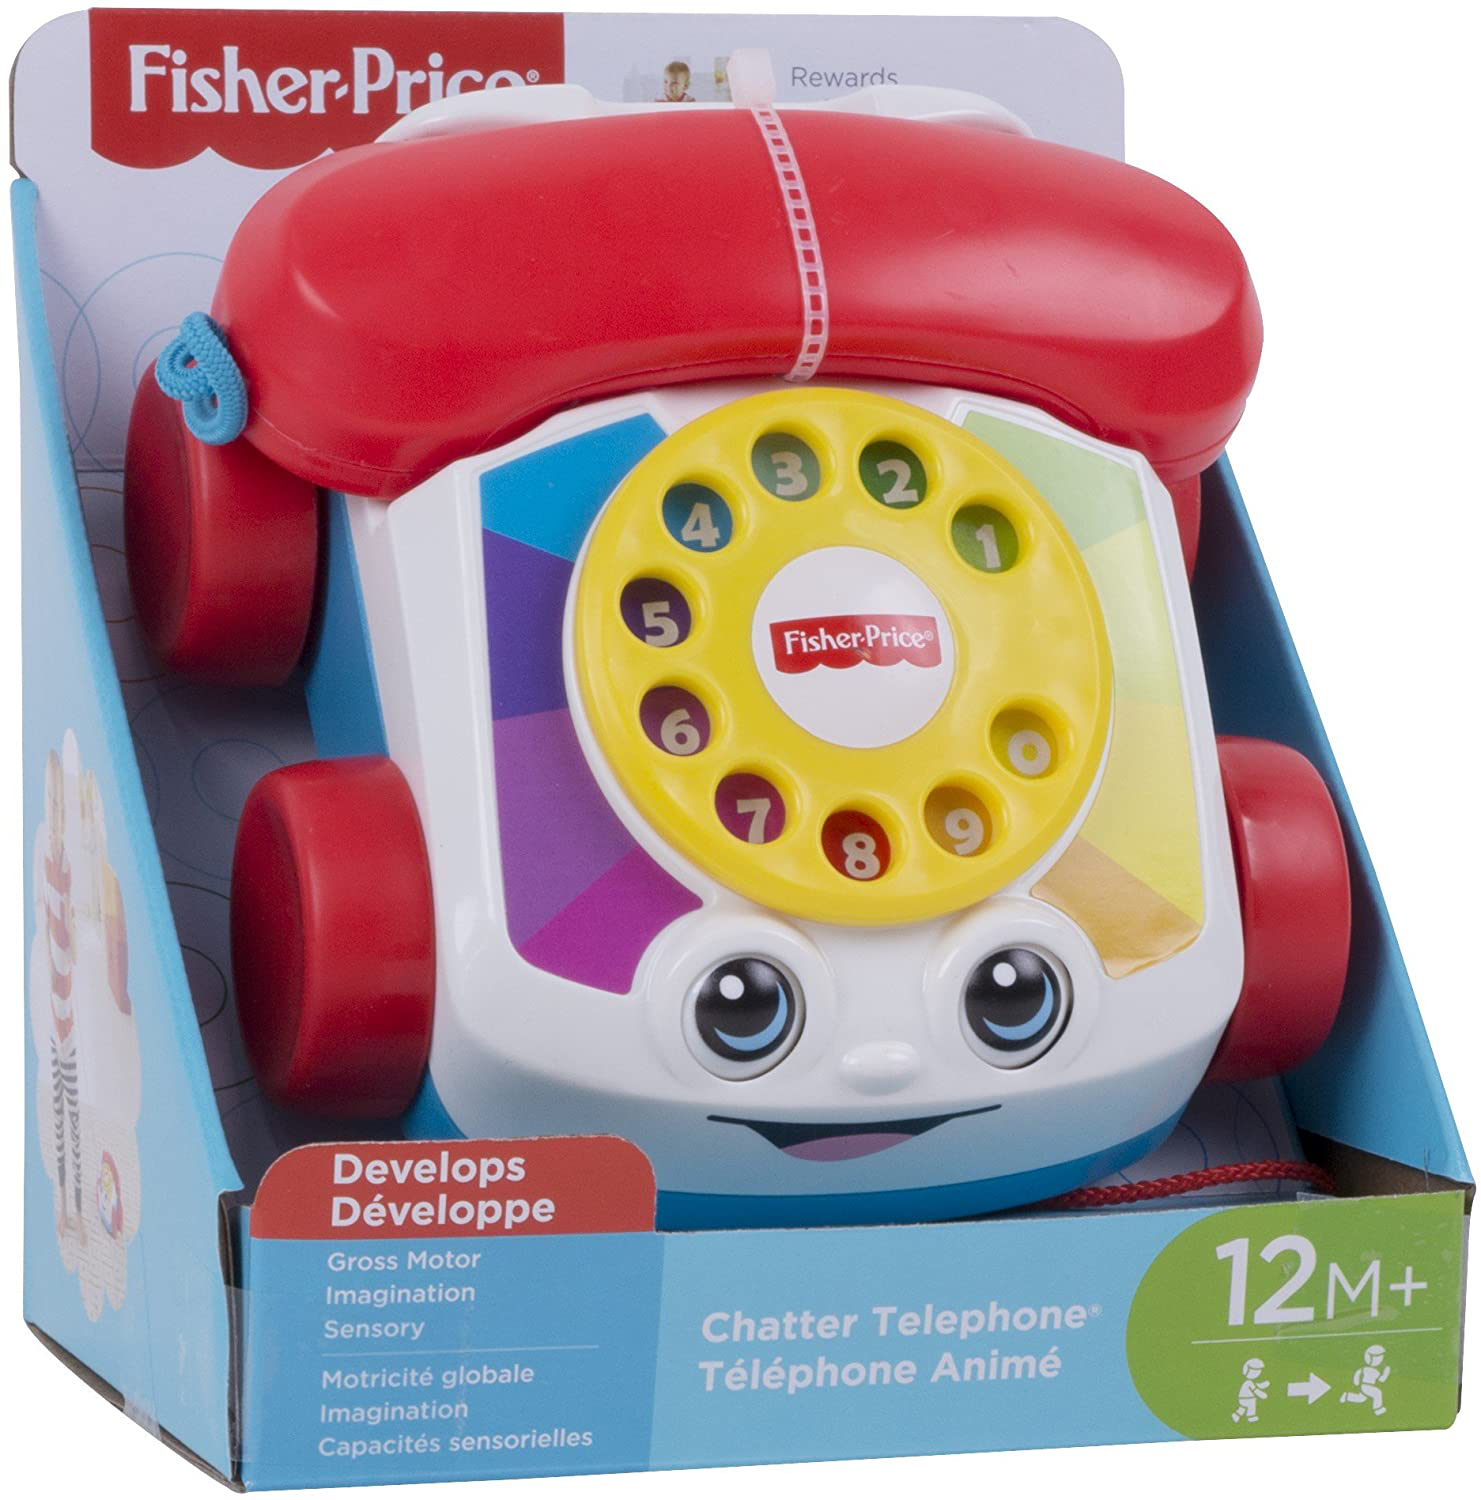 Reg телефон. Телефончик Fisher Price. Игрушка "телефон". Умный телефон игрушка Fisher Price. Детский стационарный телефон игрушка.